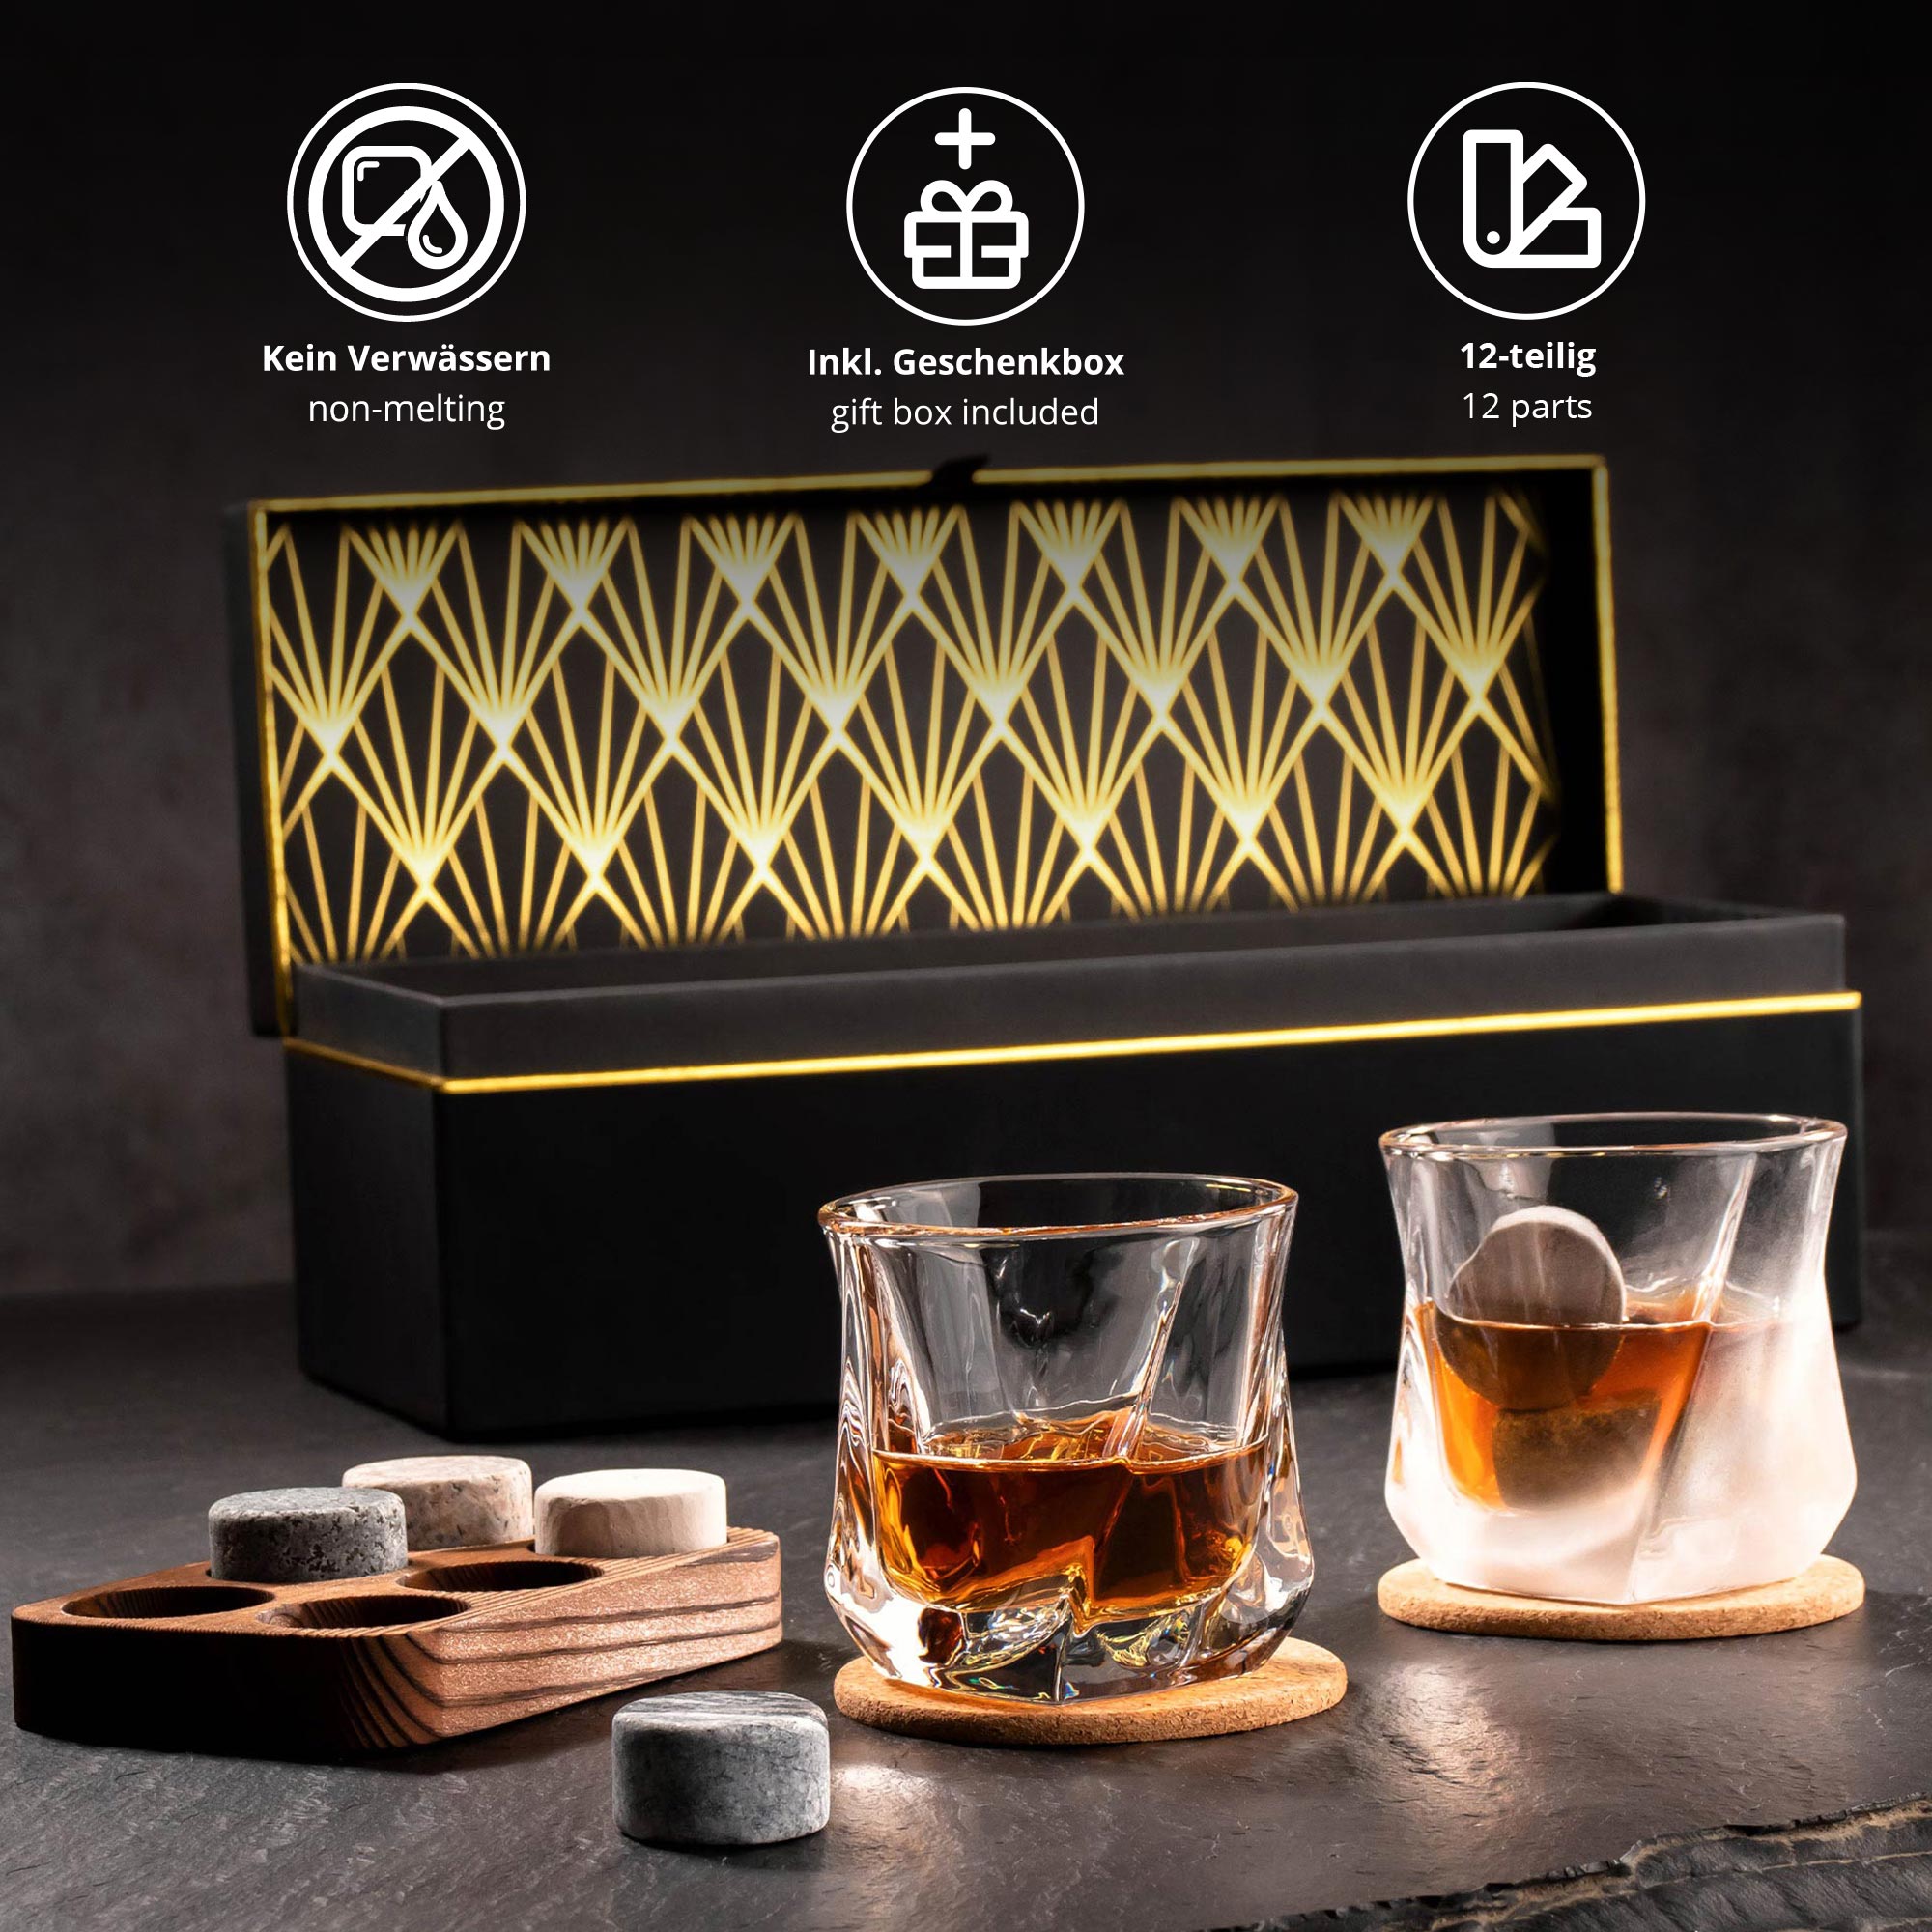 Whisky Geschenkset Deluxe personalisiert zum 30. Geburtstag